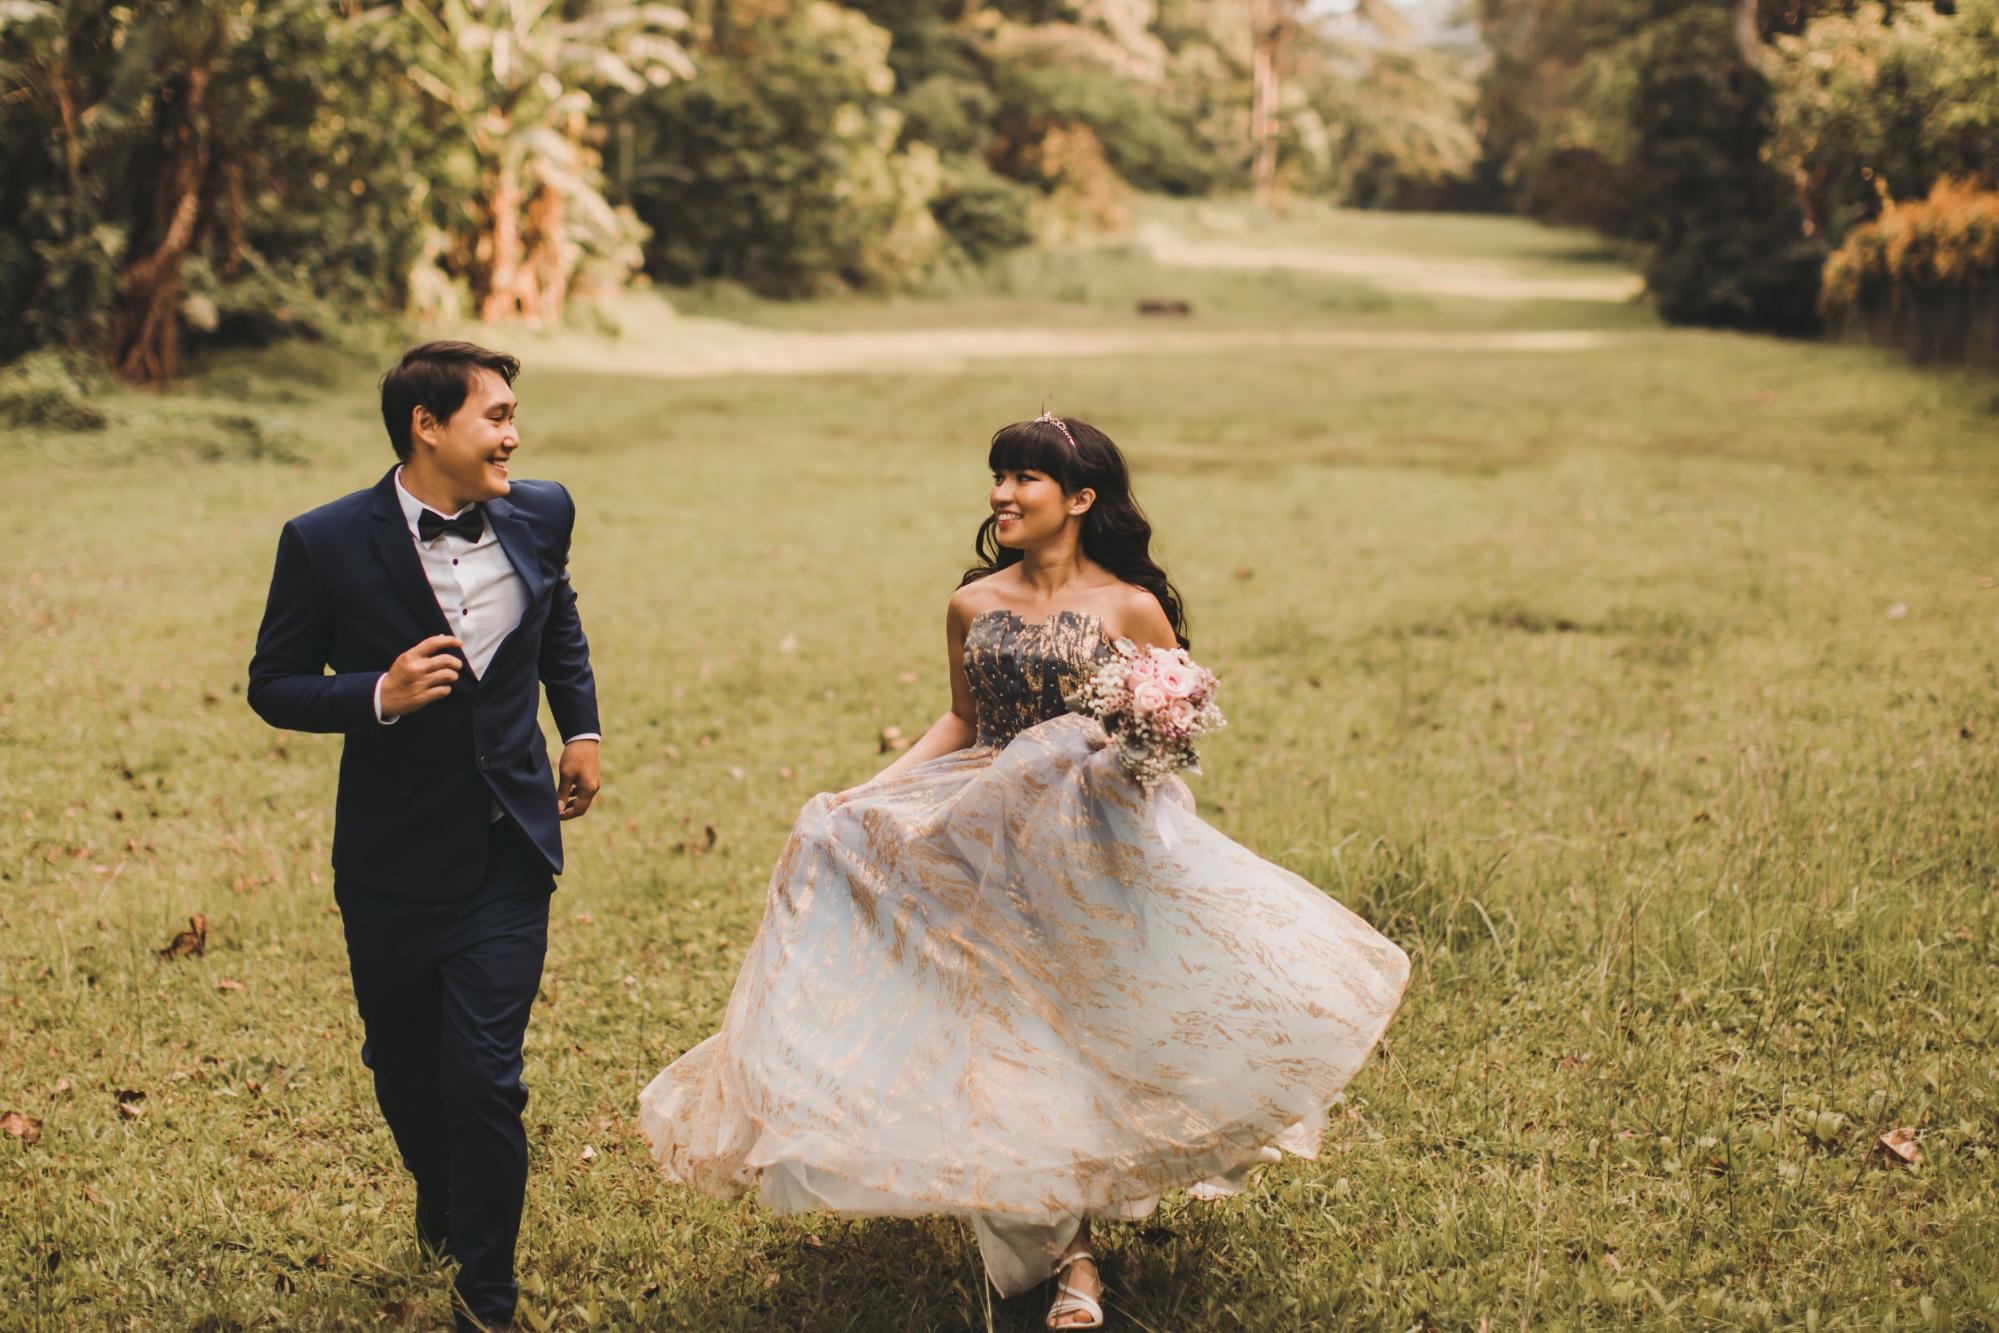 Pre-wedding photoshoot tips